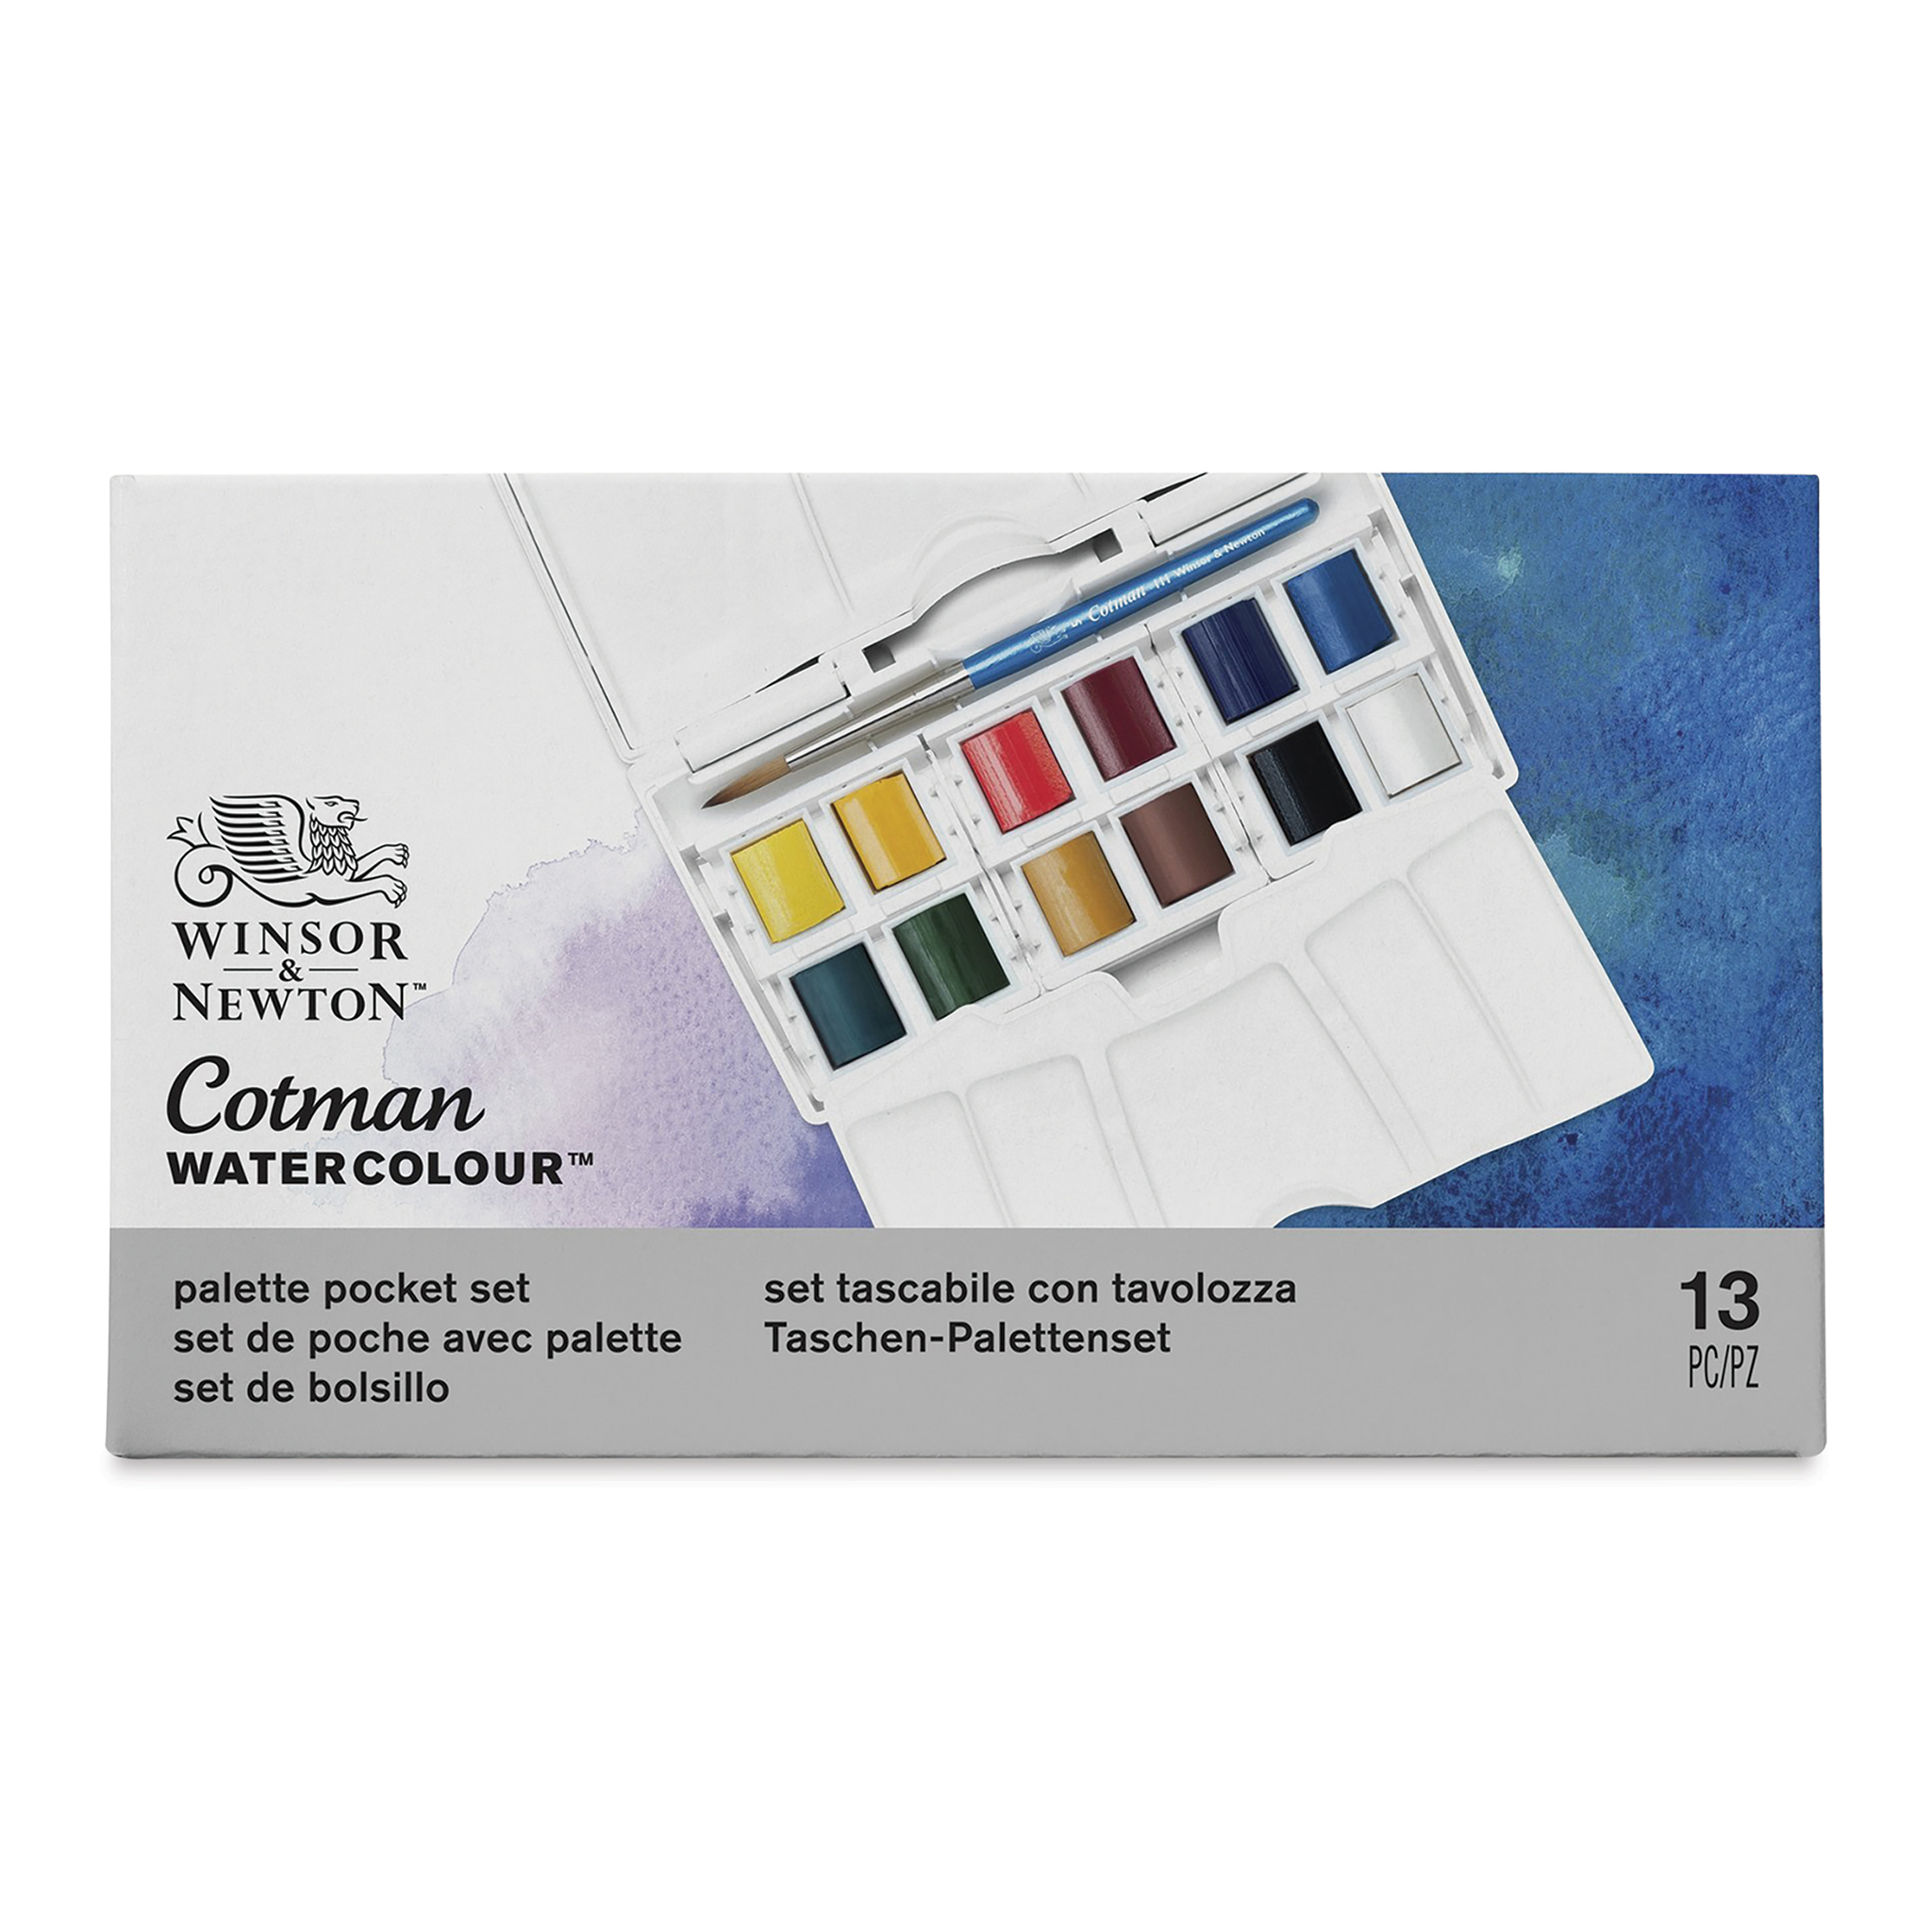 Winsor & Newton Cotman Watercolor Set - Palette Pocket Set, Set of